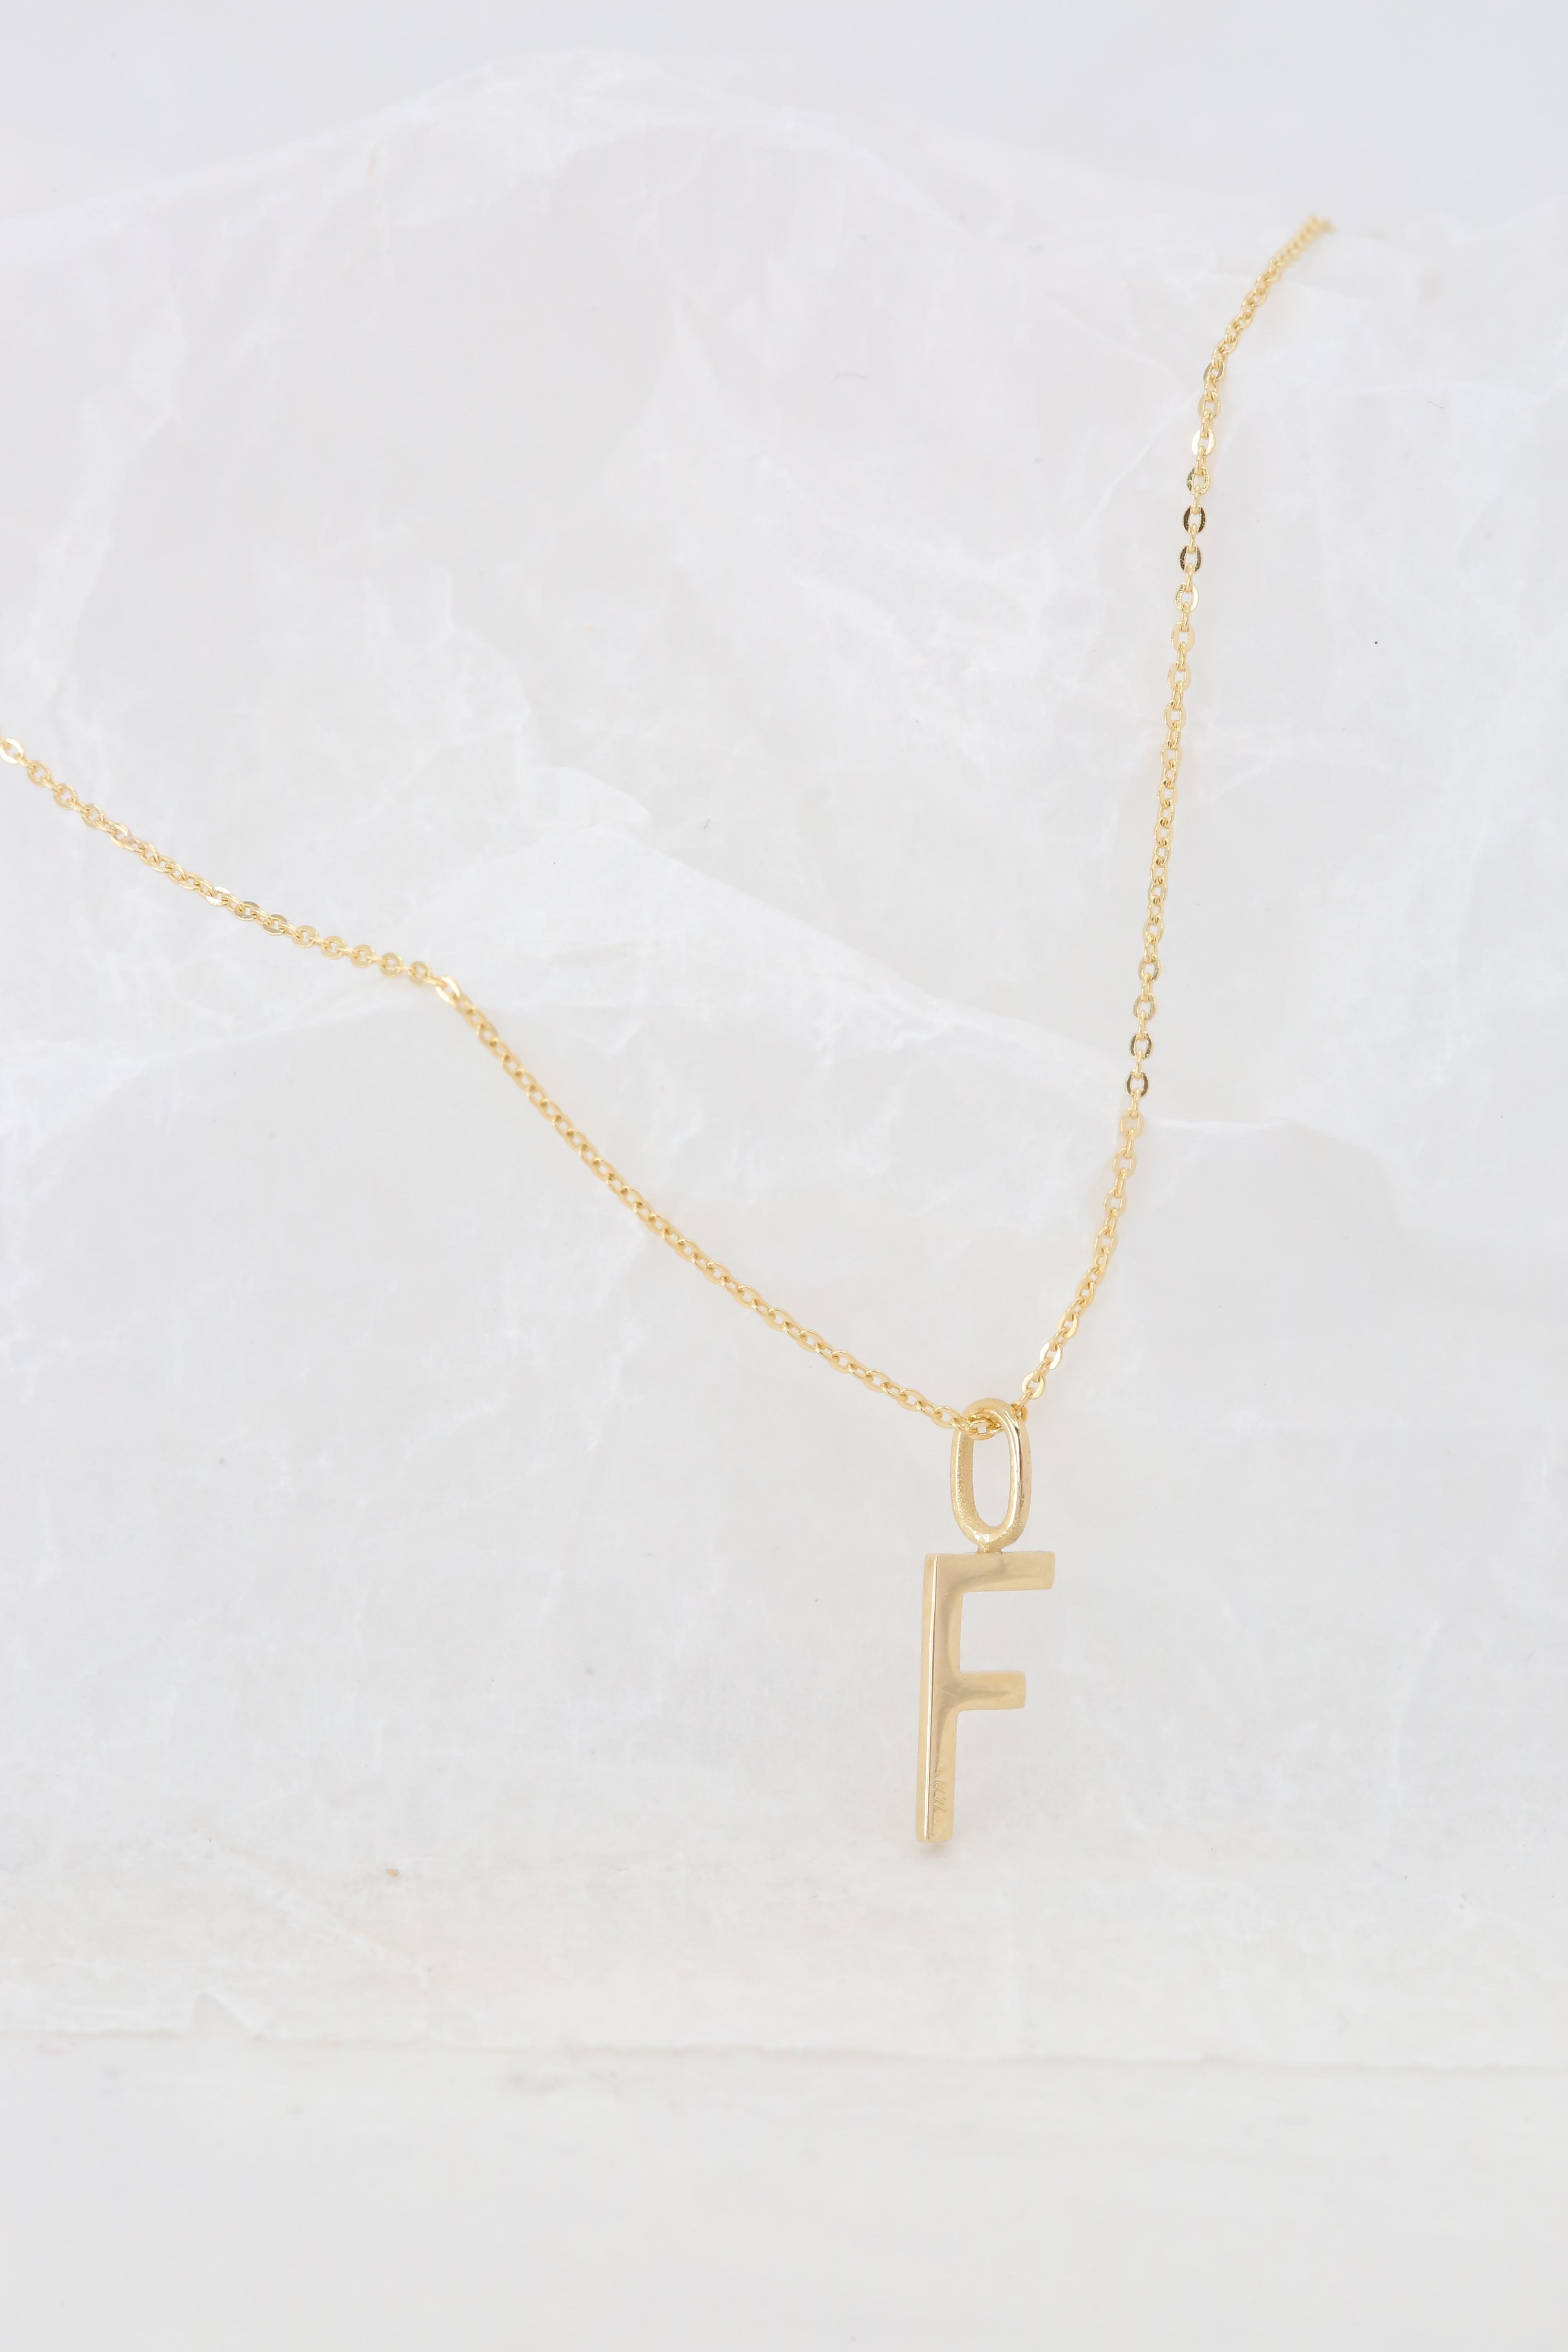 Modern 14k Gold Necklaces, Letter Necklace Models, Letter F Gold Necklace-Gift Necklace For Sale